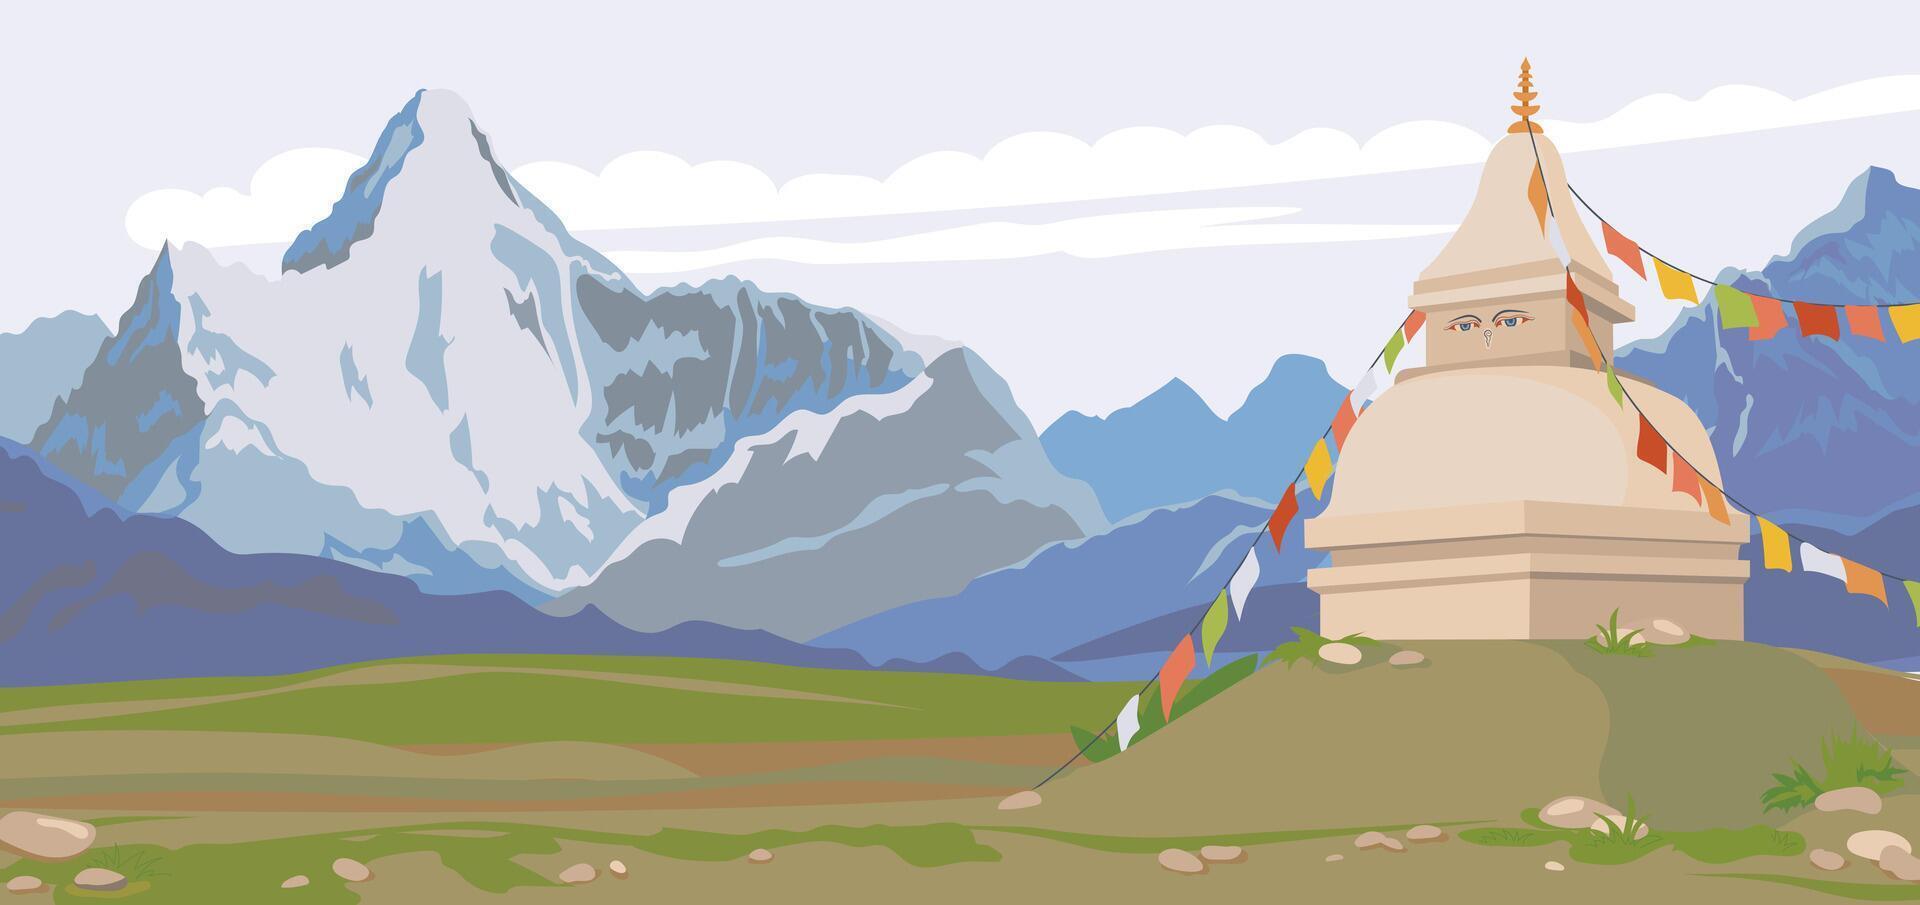 visie van de Himalaya, boeddhistisch stoepa versierd met vlaggen. berg horizontaal landschap van Nepal. vector illustratie, vlak stijl. religieus plaats van aanbidden en gebed.